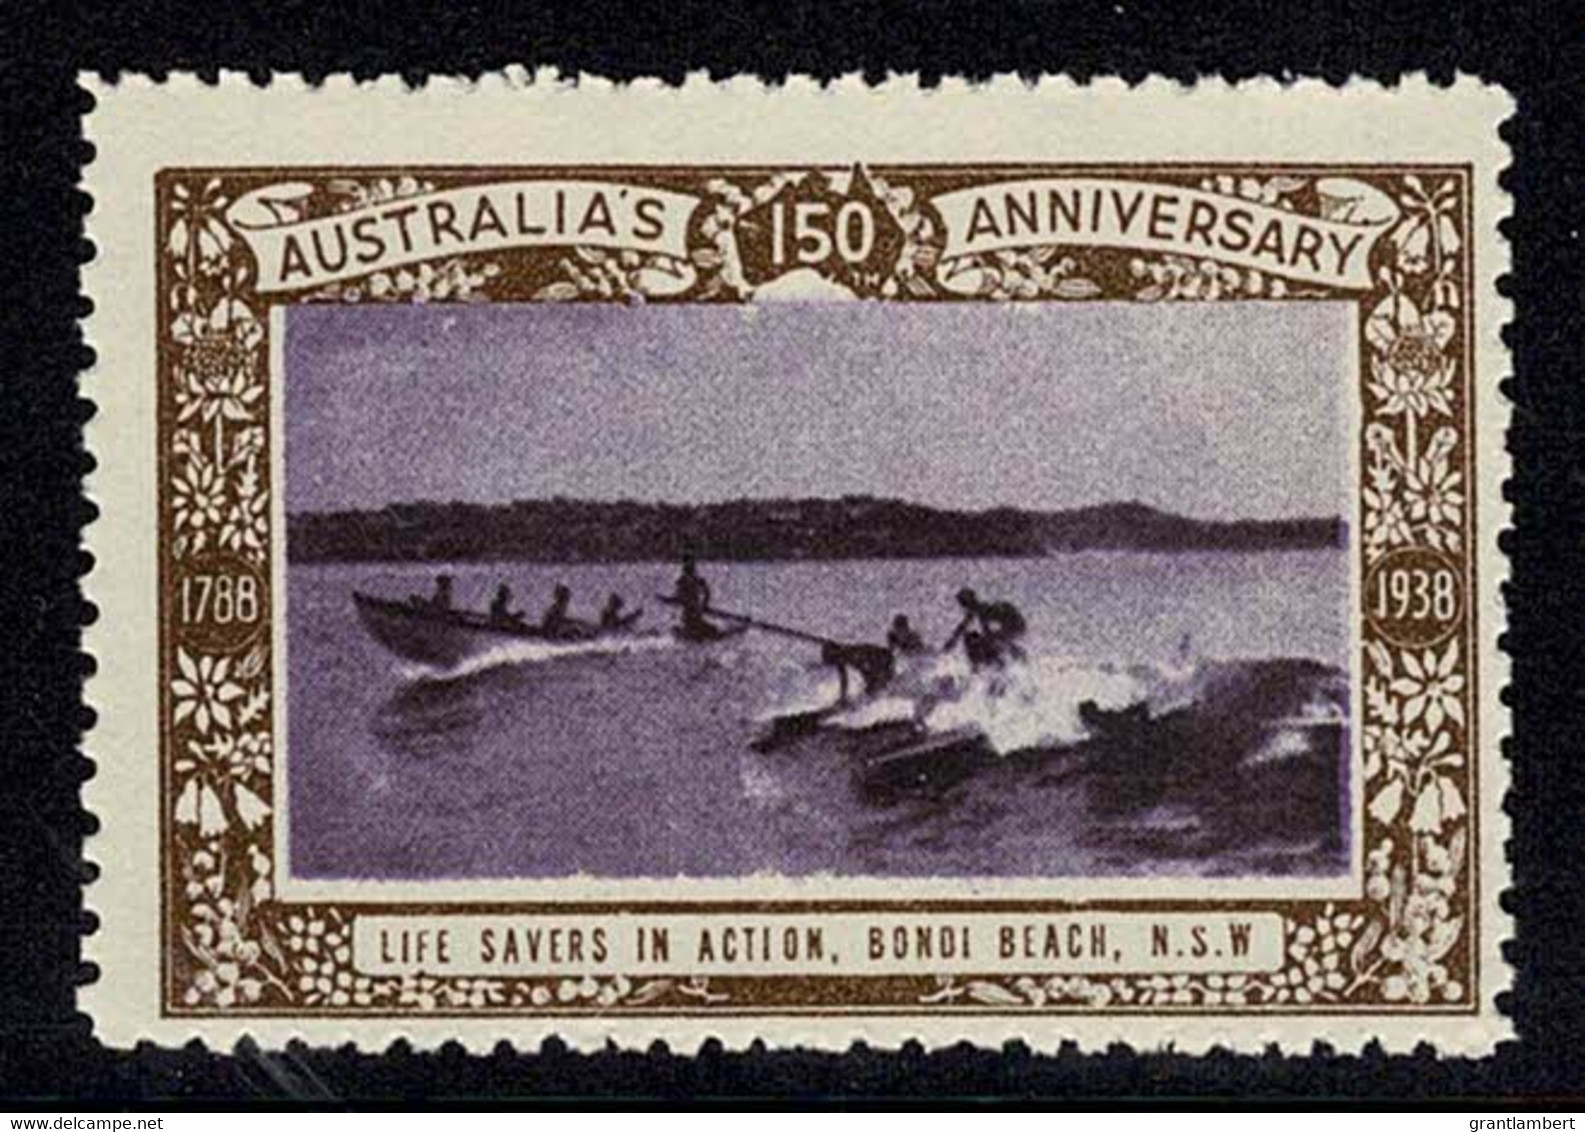 Australia 1938 Life Savers, Bondi Beach - NSW 150th Anniversary Cinderella MNH - Werbemarken, Vignetten